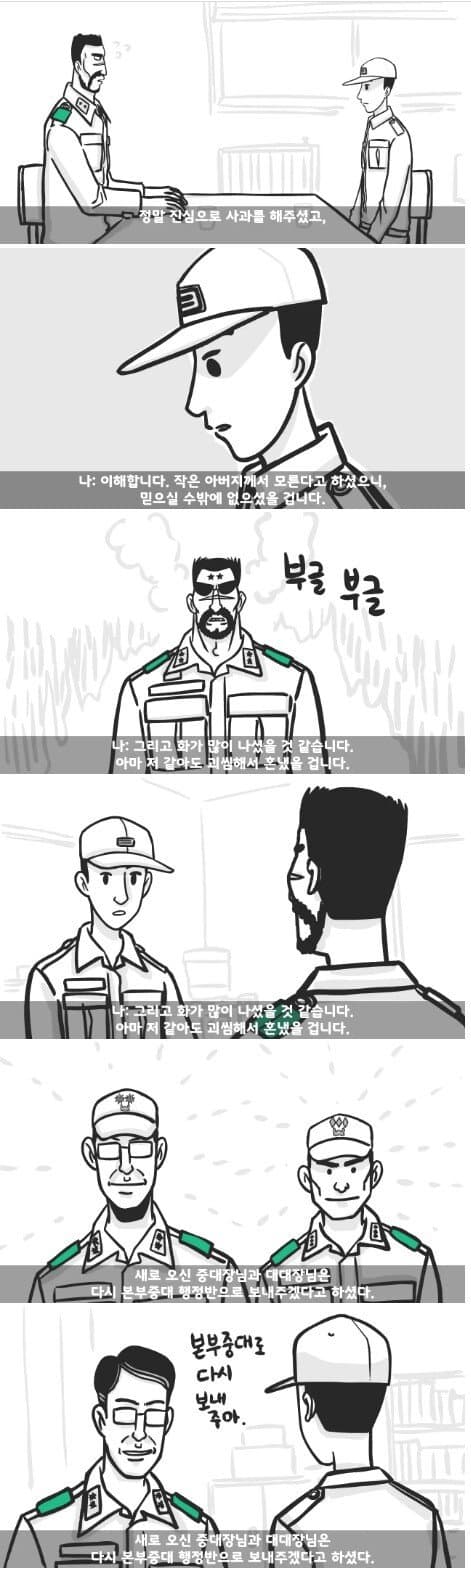 군대 4스타인 만화 20.jpg